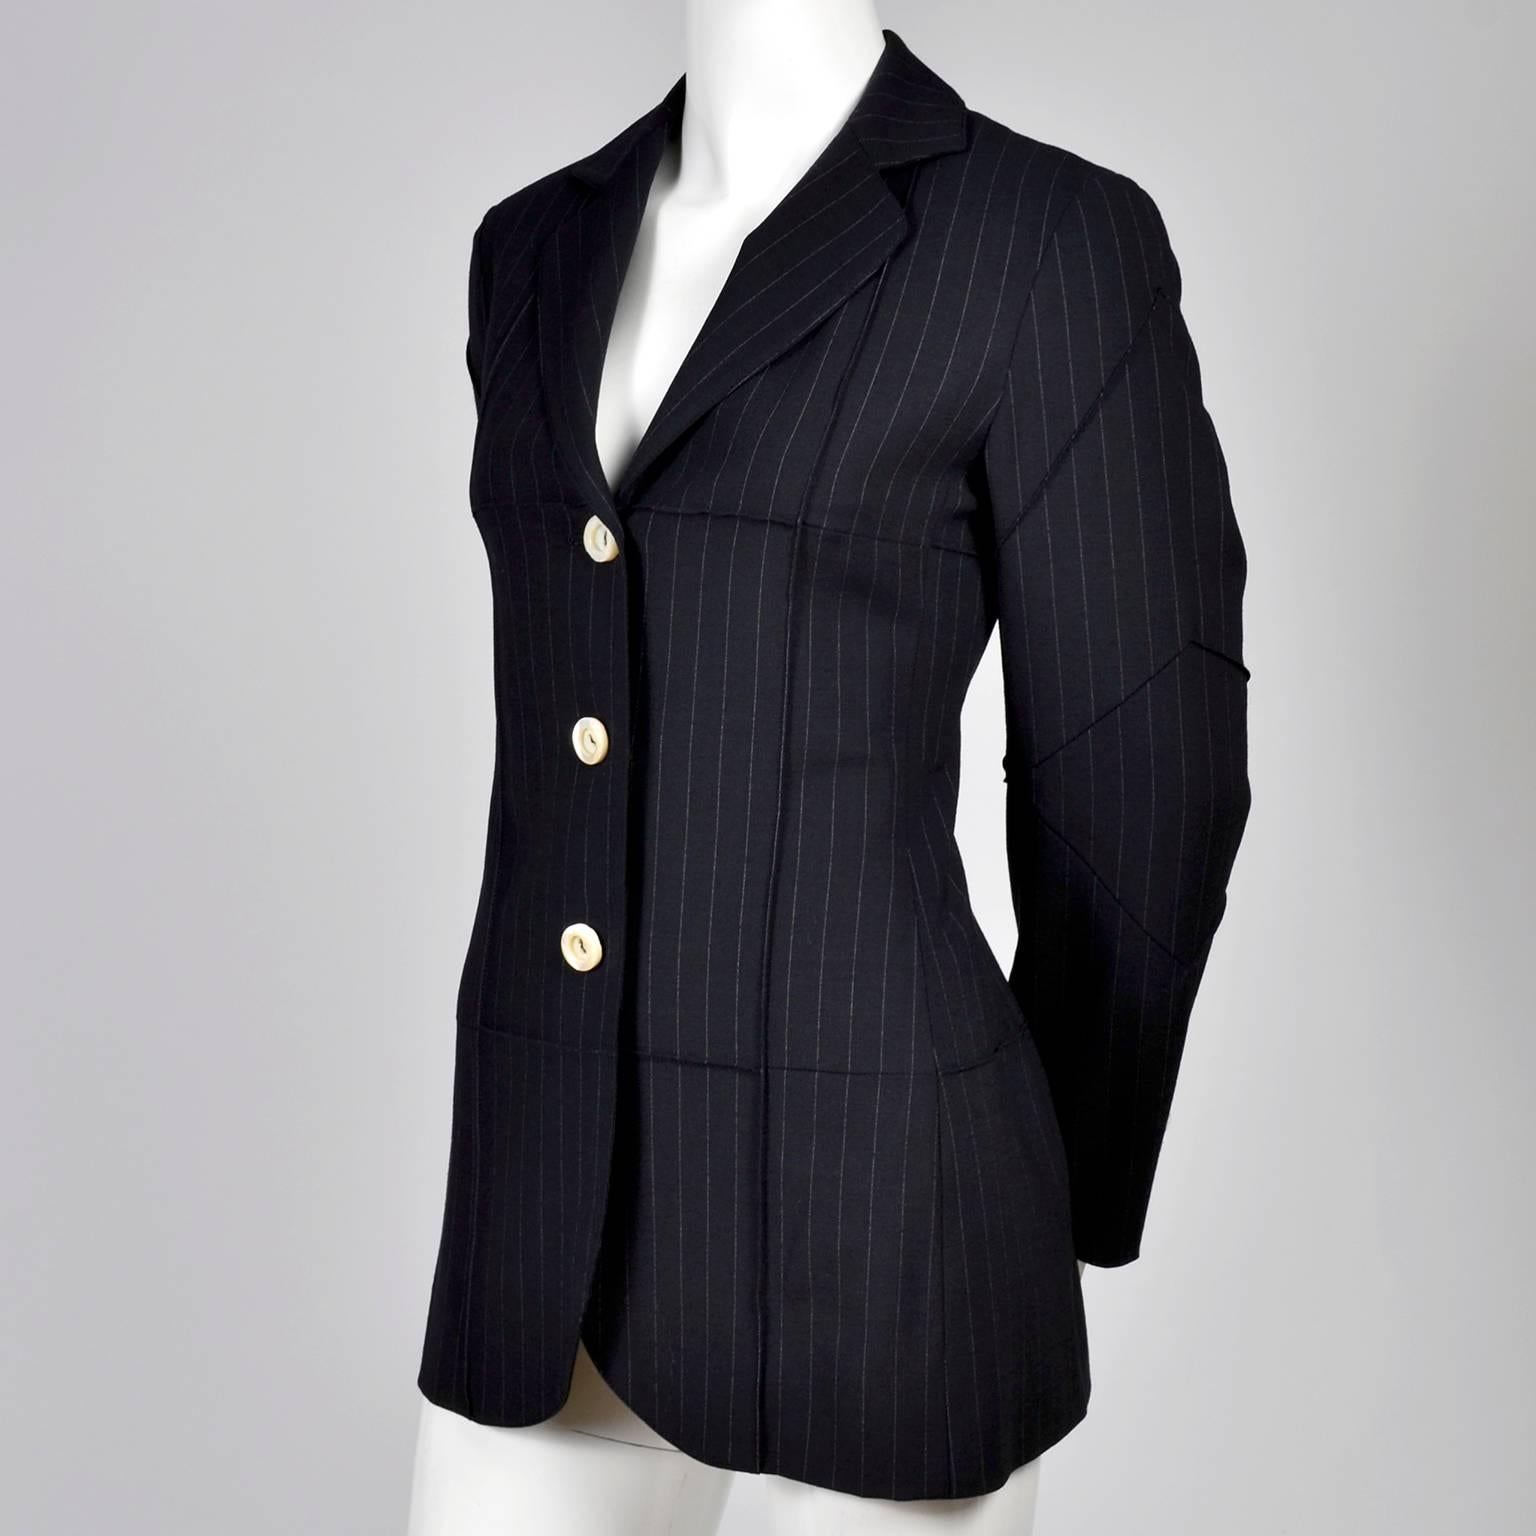 Black 1990s Vintage Moschino Blazer in Navy Blue Pinstripe Wool Blend US Size 6